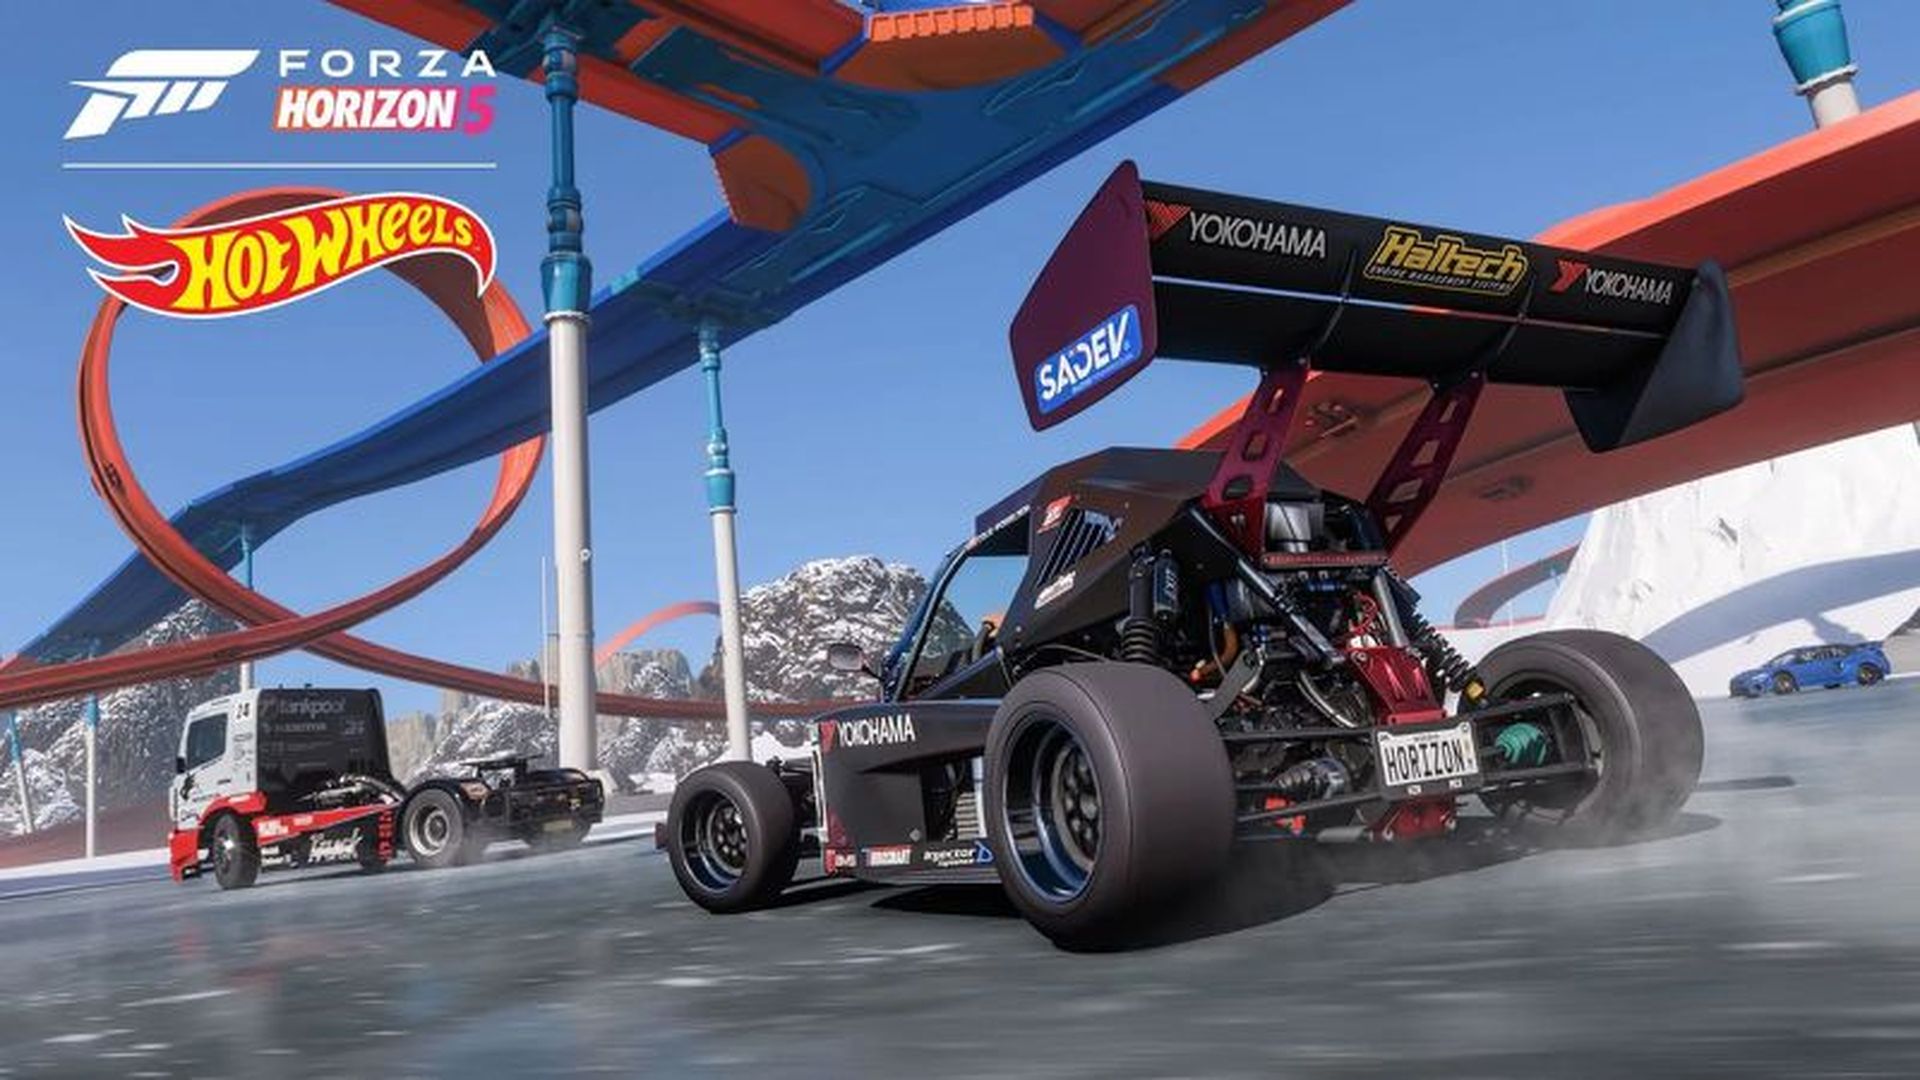 Damas y caballeros, el DLC Hot Wheels de Forza Horizon 5 ya está disponible y trae un nuevo centro de carreras y el juego de herramientas de construcción de pistas del juego junto con una flota de artefactos fundidos a presión e infraestructura de pistas de plástico.